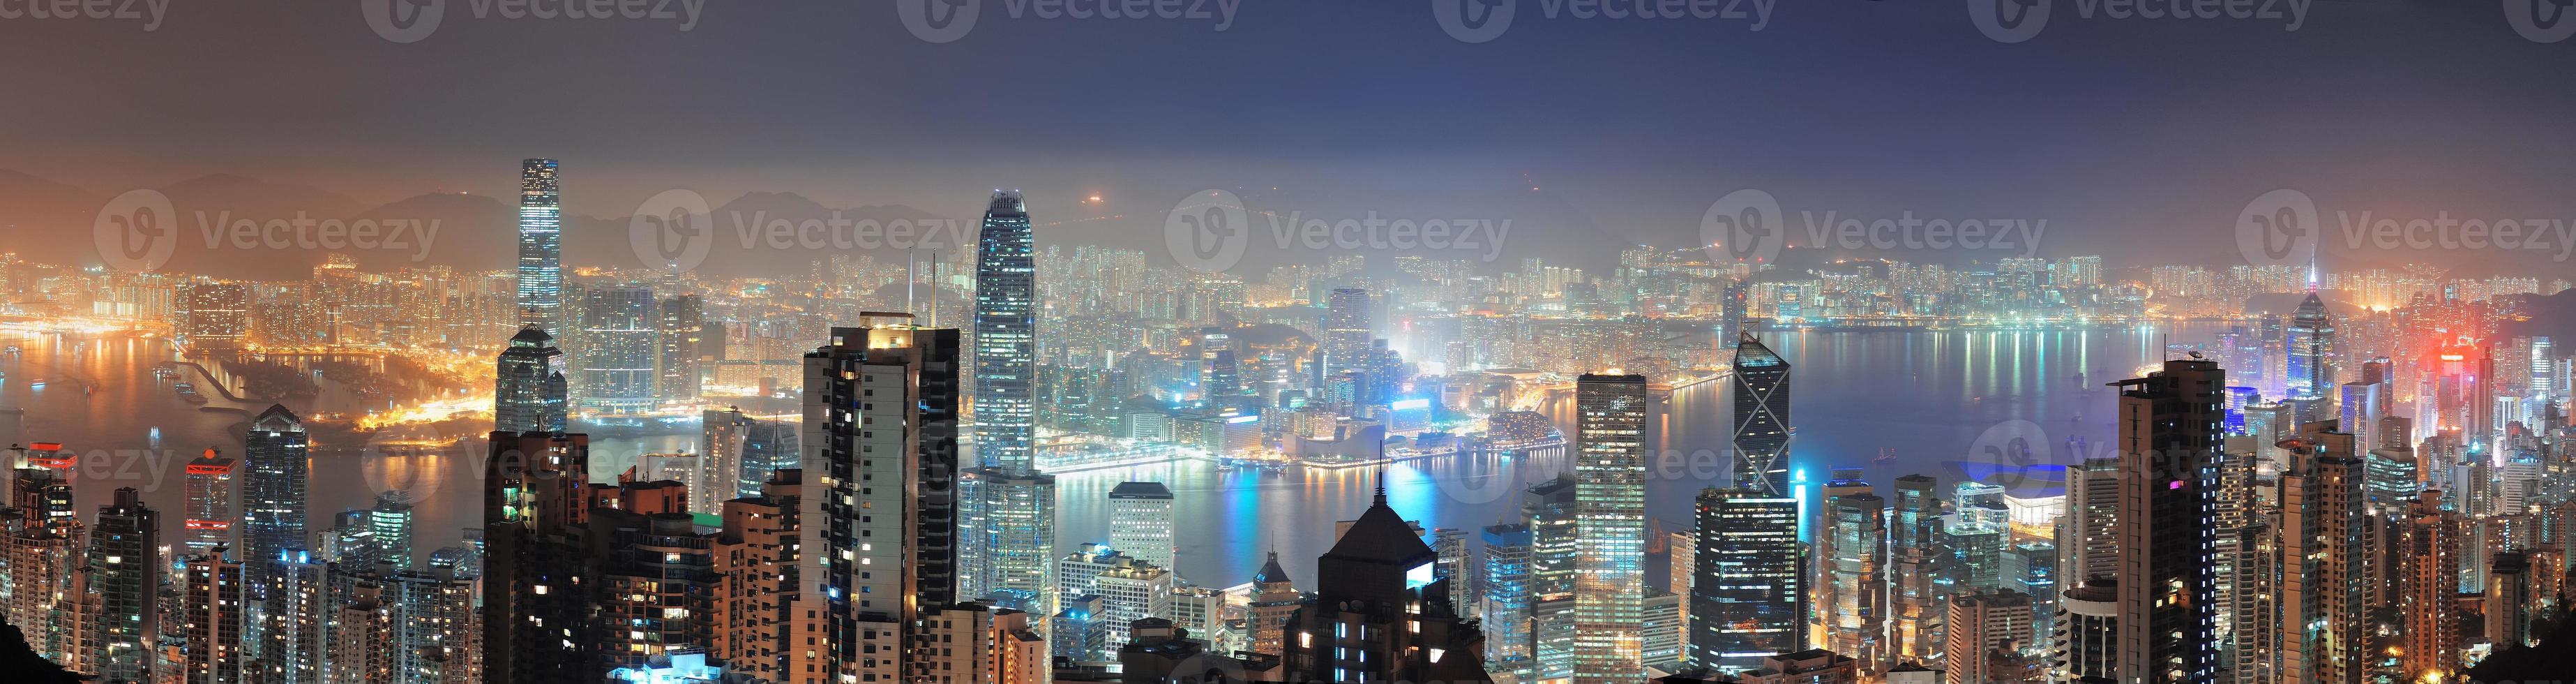 Hong Kong in der Nacht foto